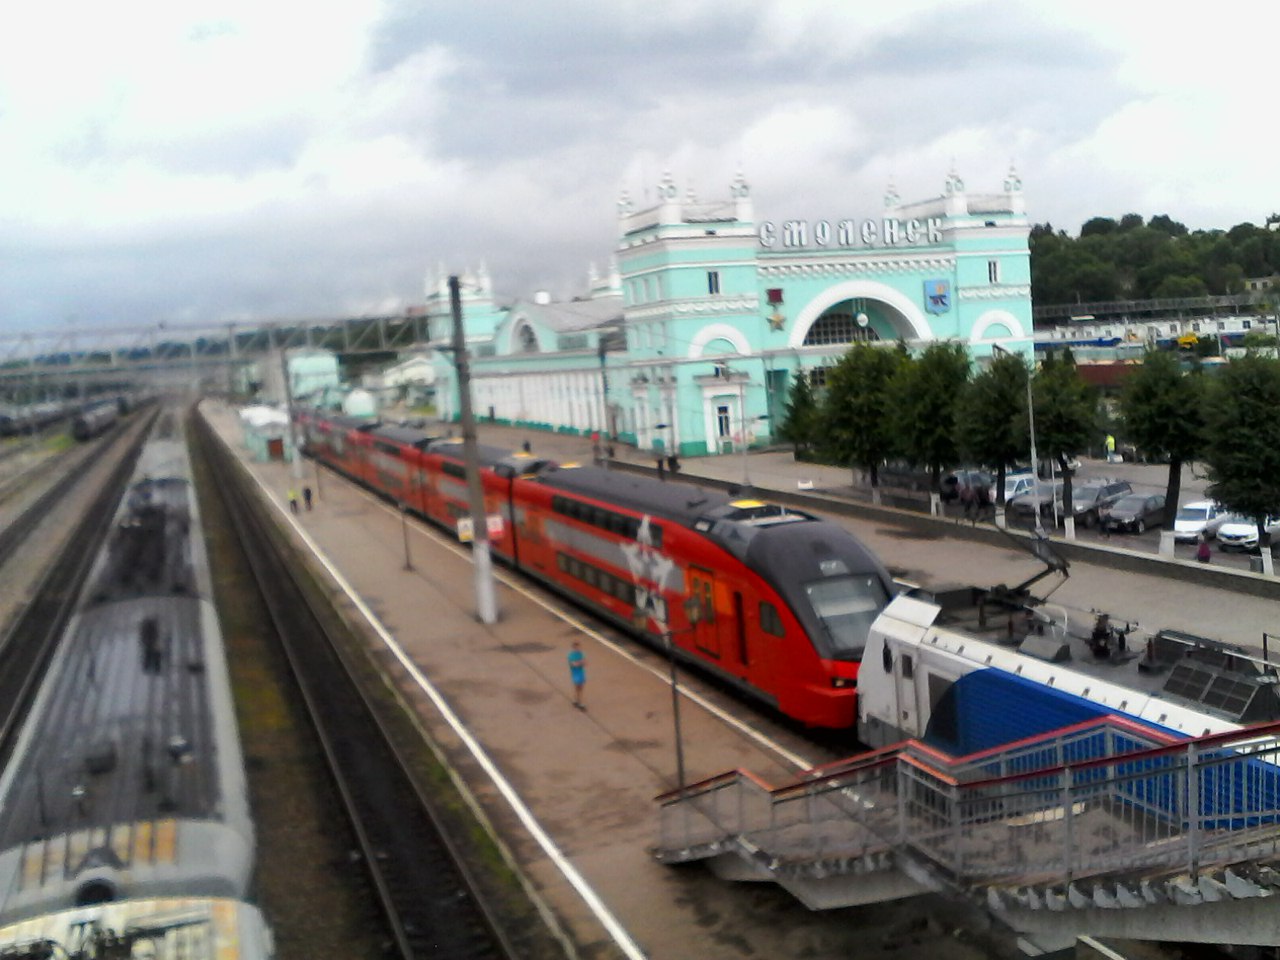 двухэтажный поезд москва смоленск